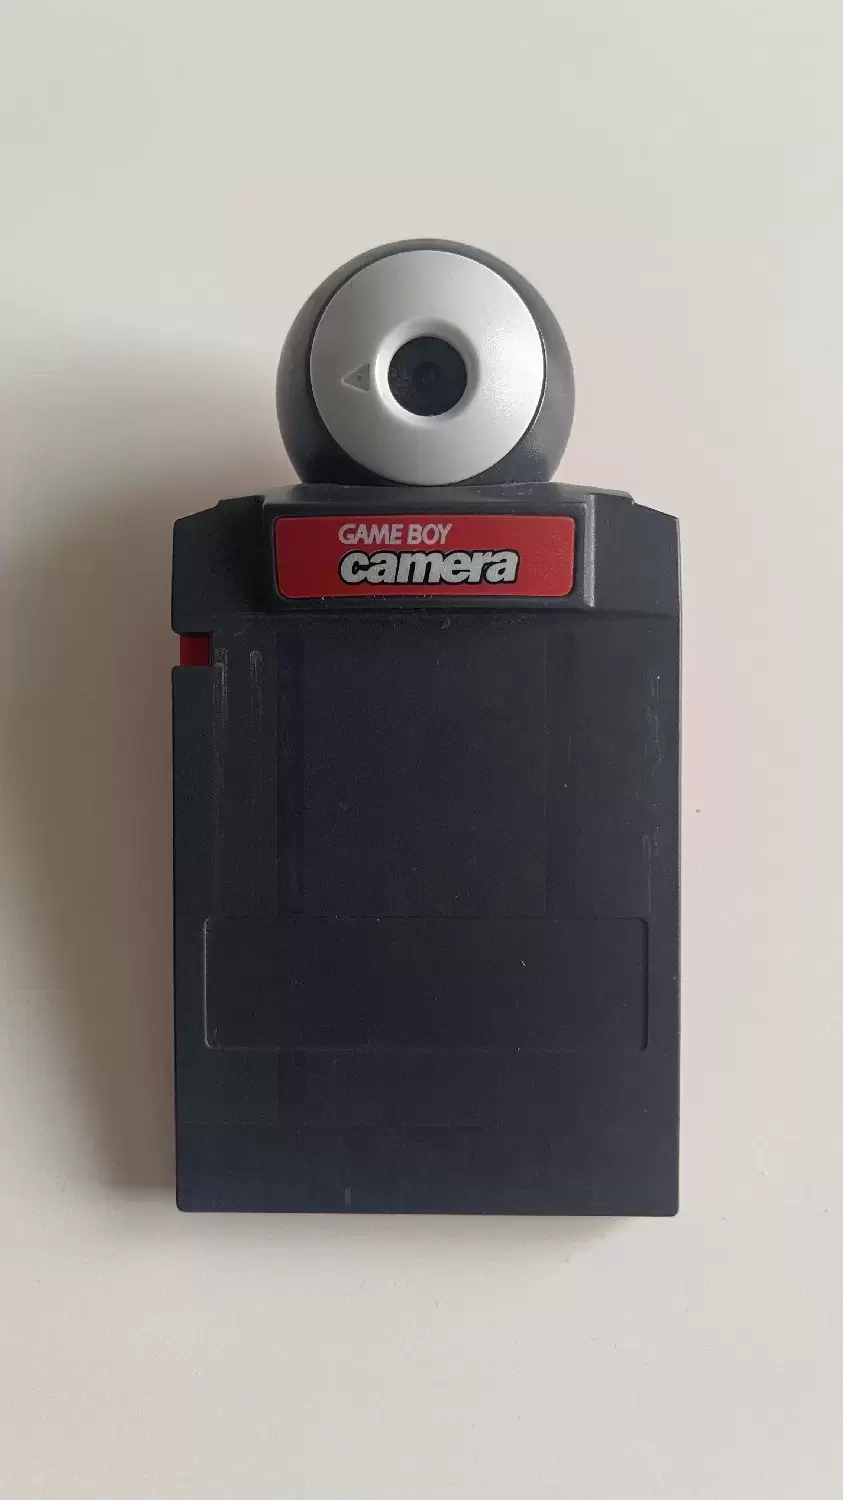 Game Boy - Game Boy Camera Red